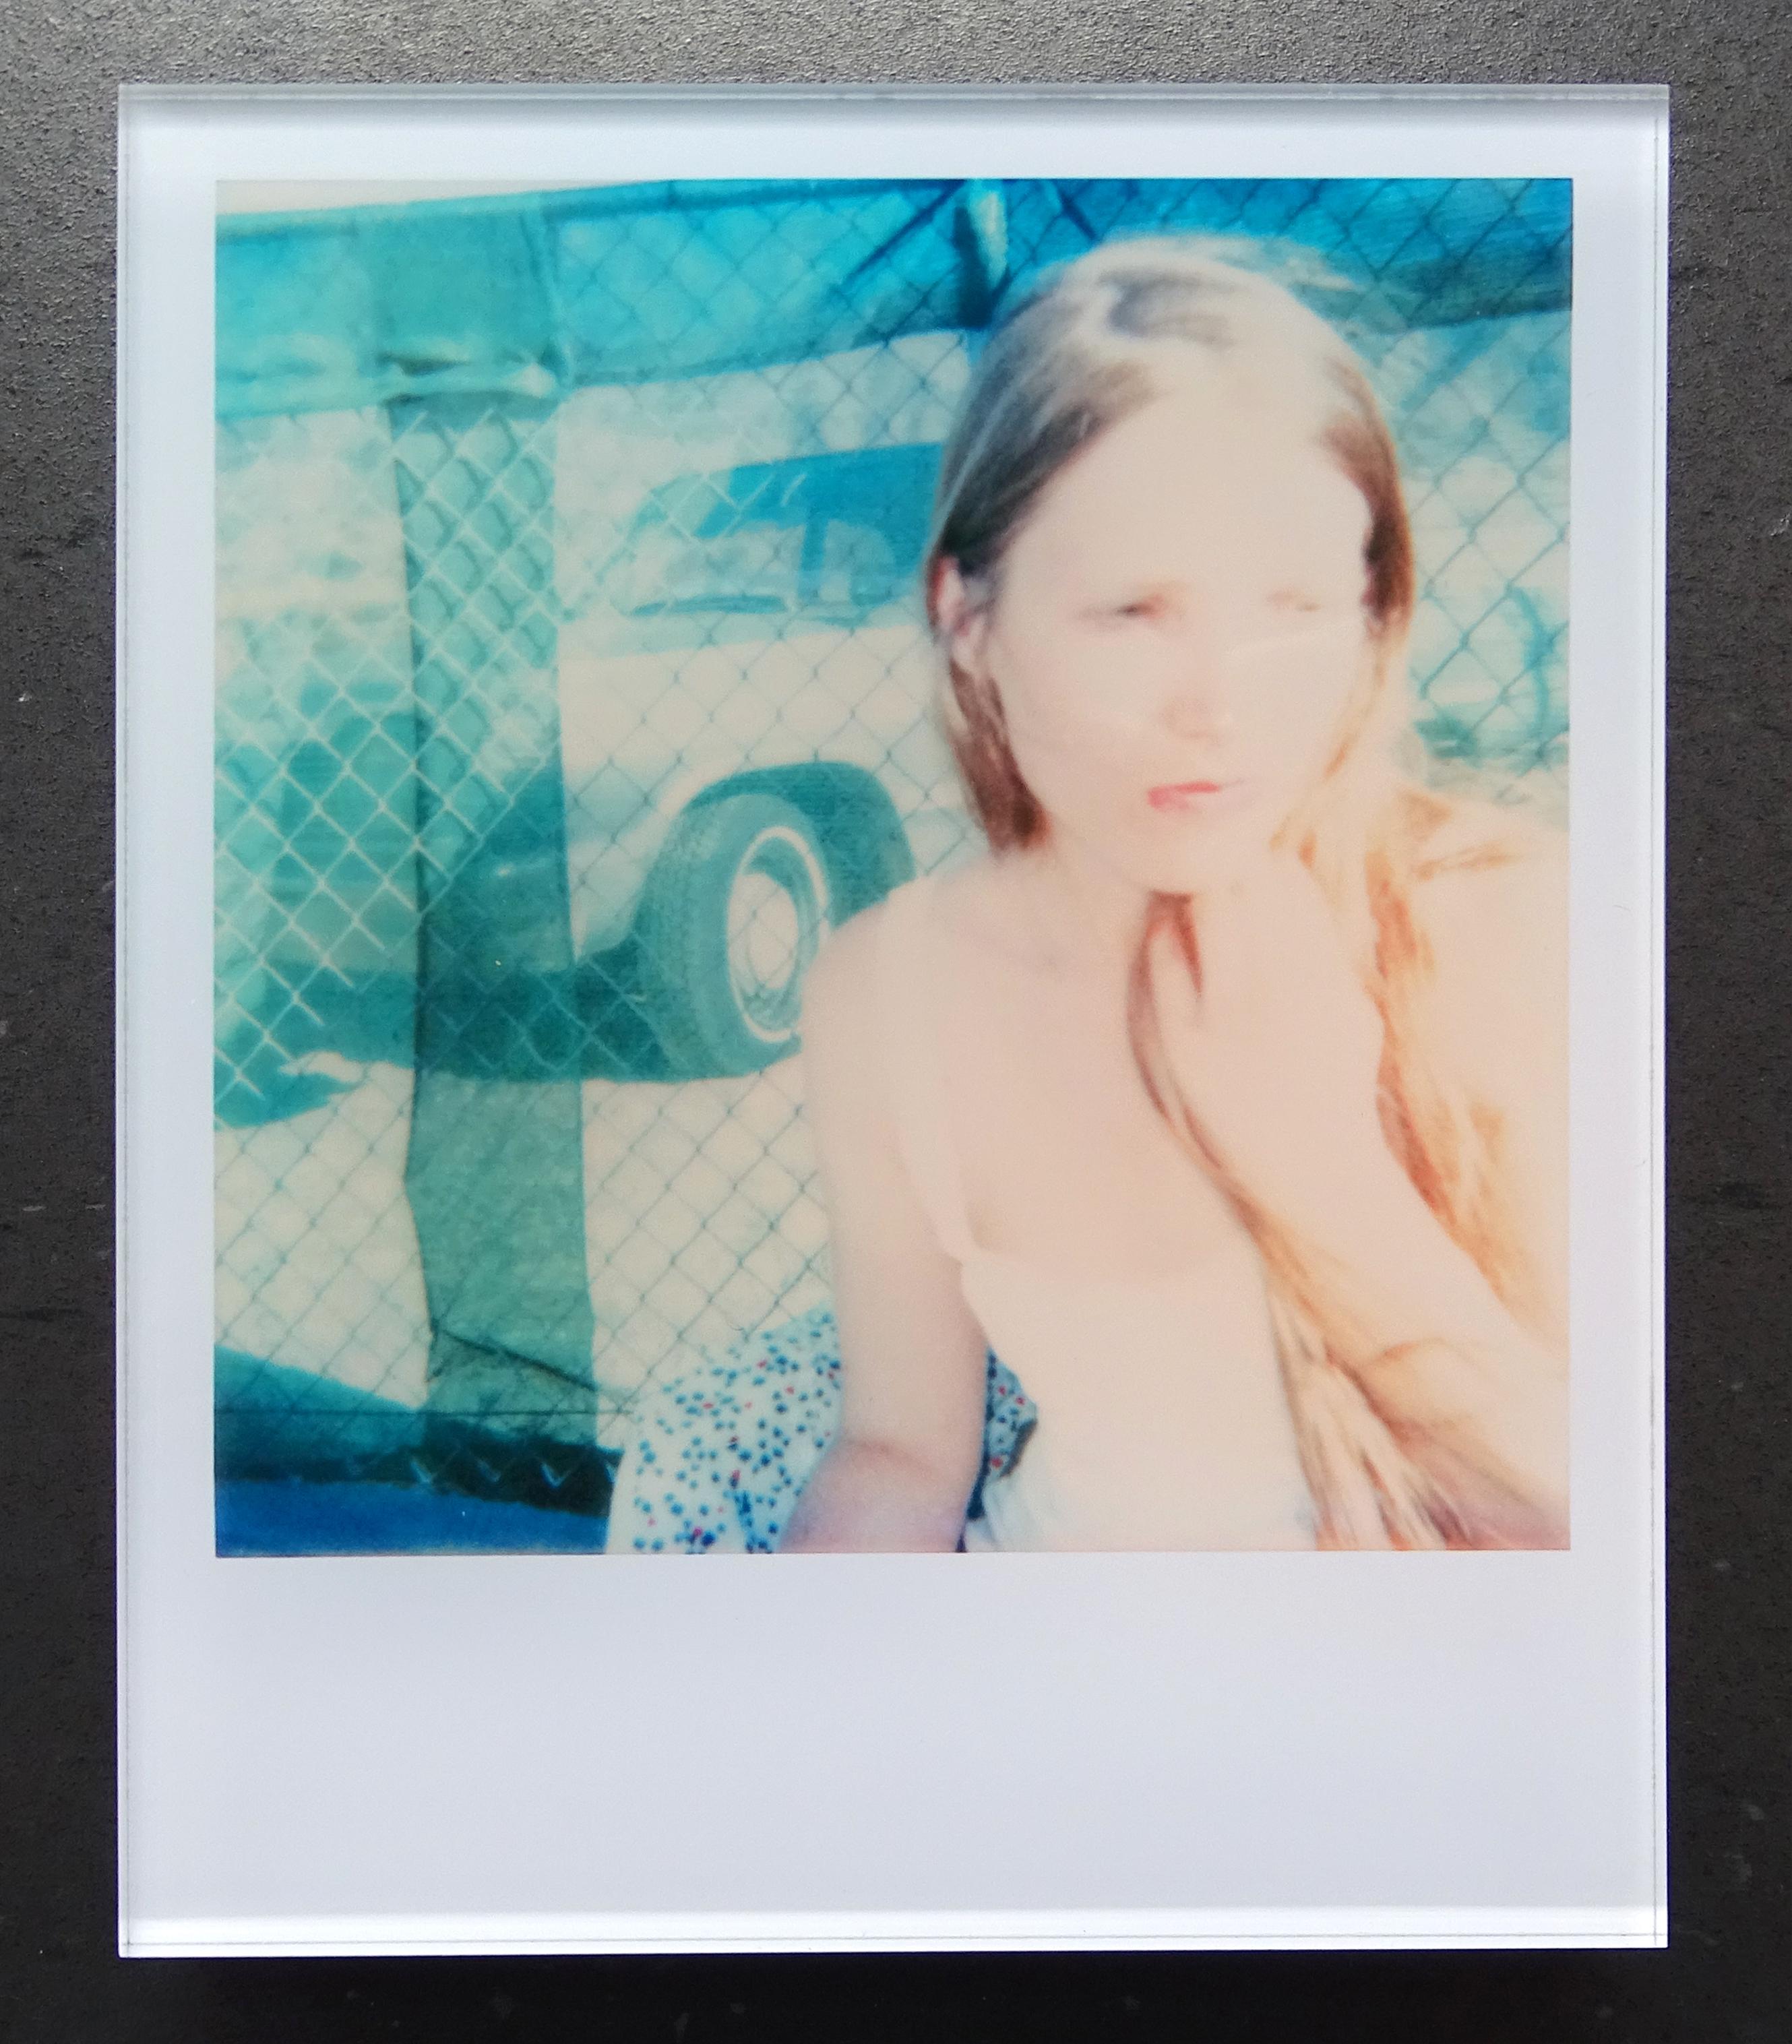 Die Minis von Stefanie Schneider
29 Day Dreams" (29 Palms, CA), 2005
verso signiert und Signaturmarke
Digitale Lambda-Farbfotografien auf Basis der Polaroid

Offene Editionen in Polaroidgröße 1999-2013
10,7 x 8,8cm (Bild 7,9x7,7cm)
montiert: